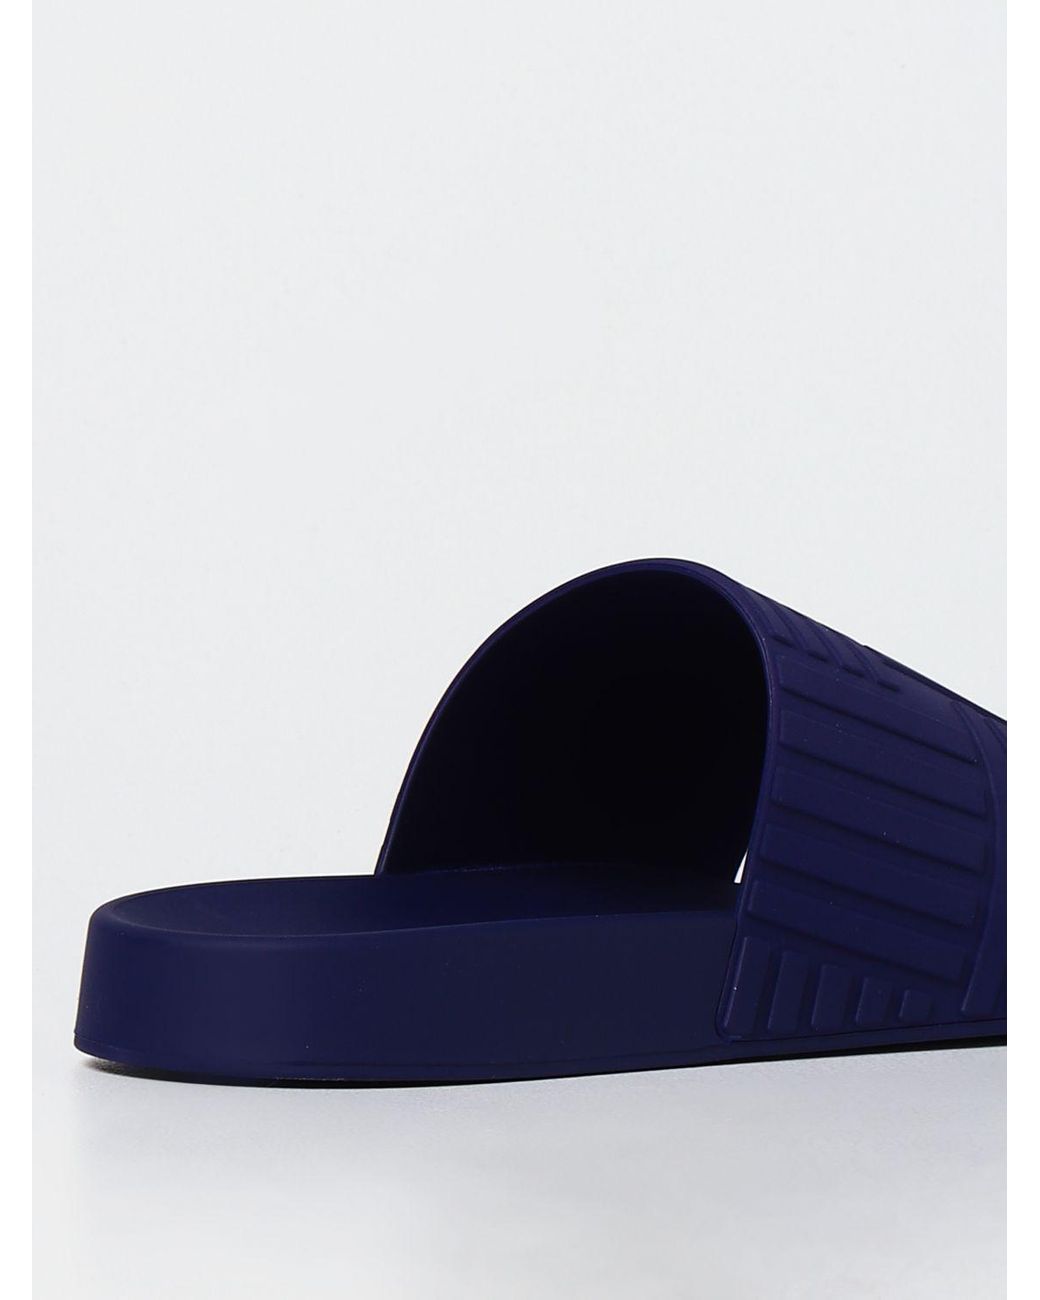 喜ばれる誕生日プレゼント Bottega Veneta Light blues rubber slippers サンダル  サイズを選択してください:IT44(29cm以上) - www.oroagri.eu